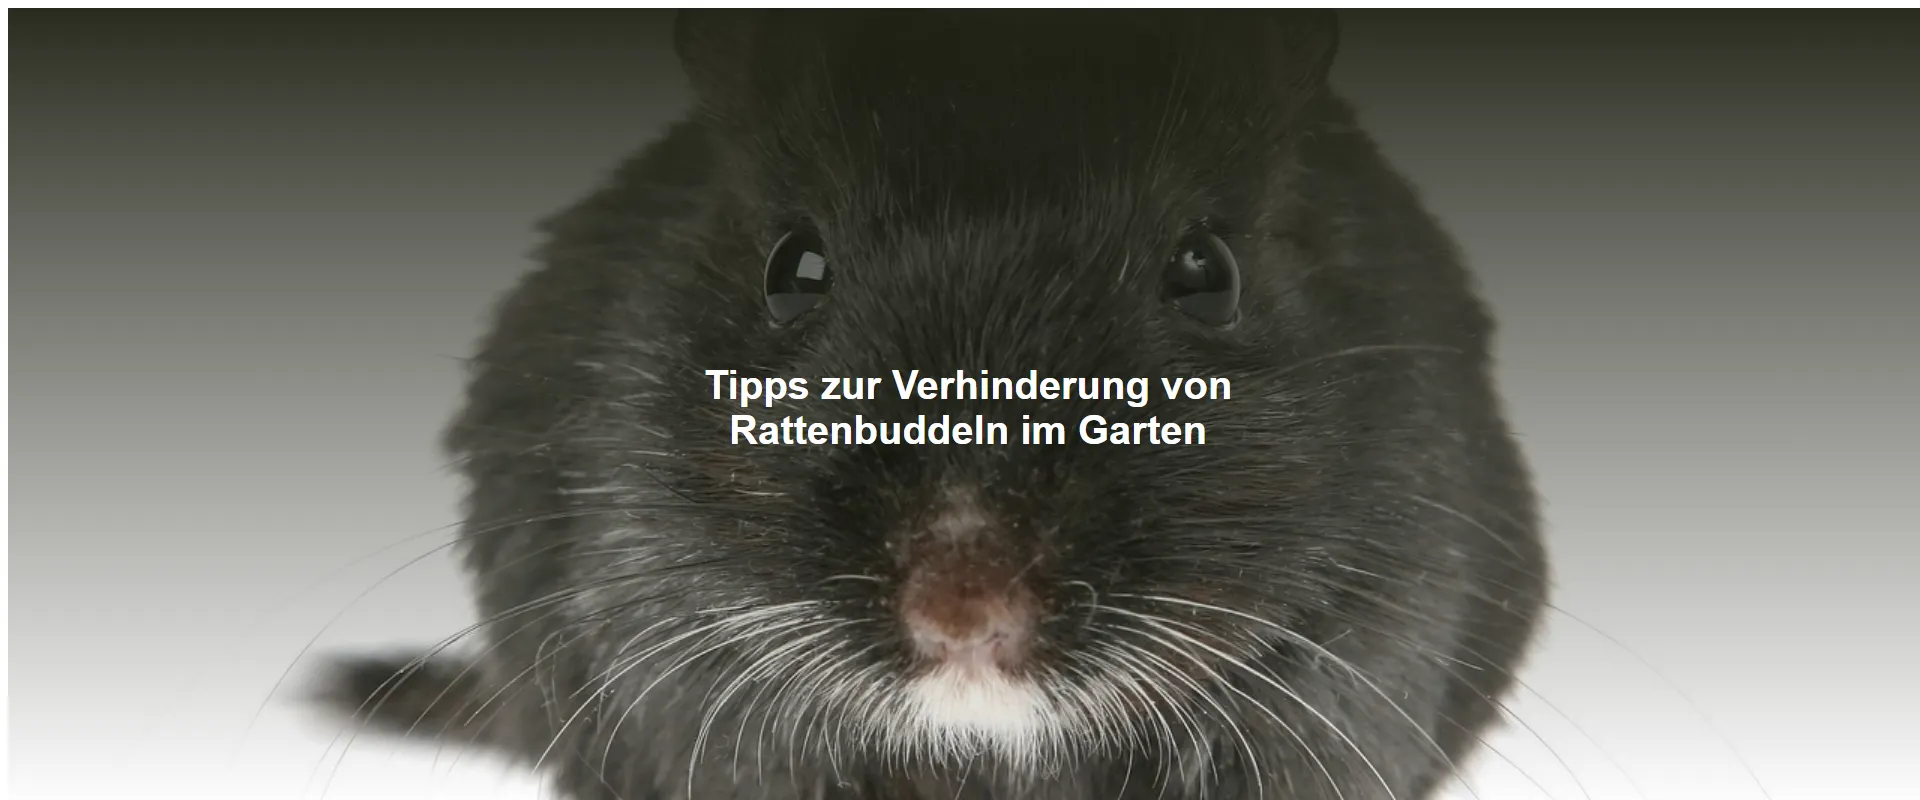 Tipps zur Verhinderung von Rattenbuddeln im Garten